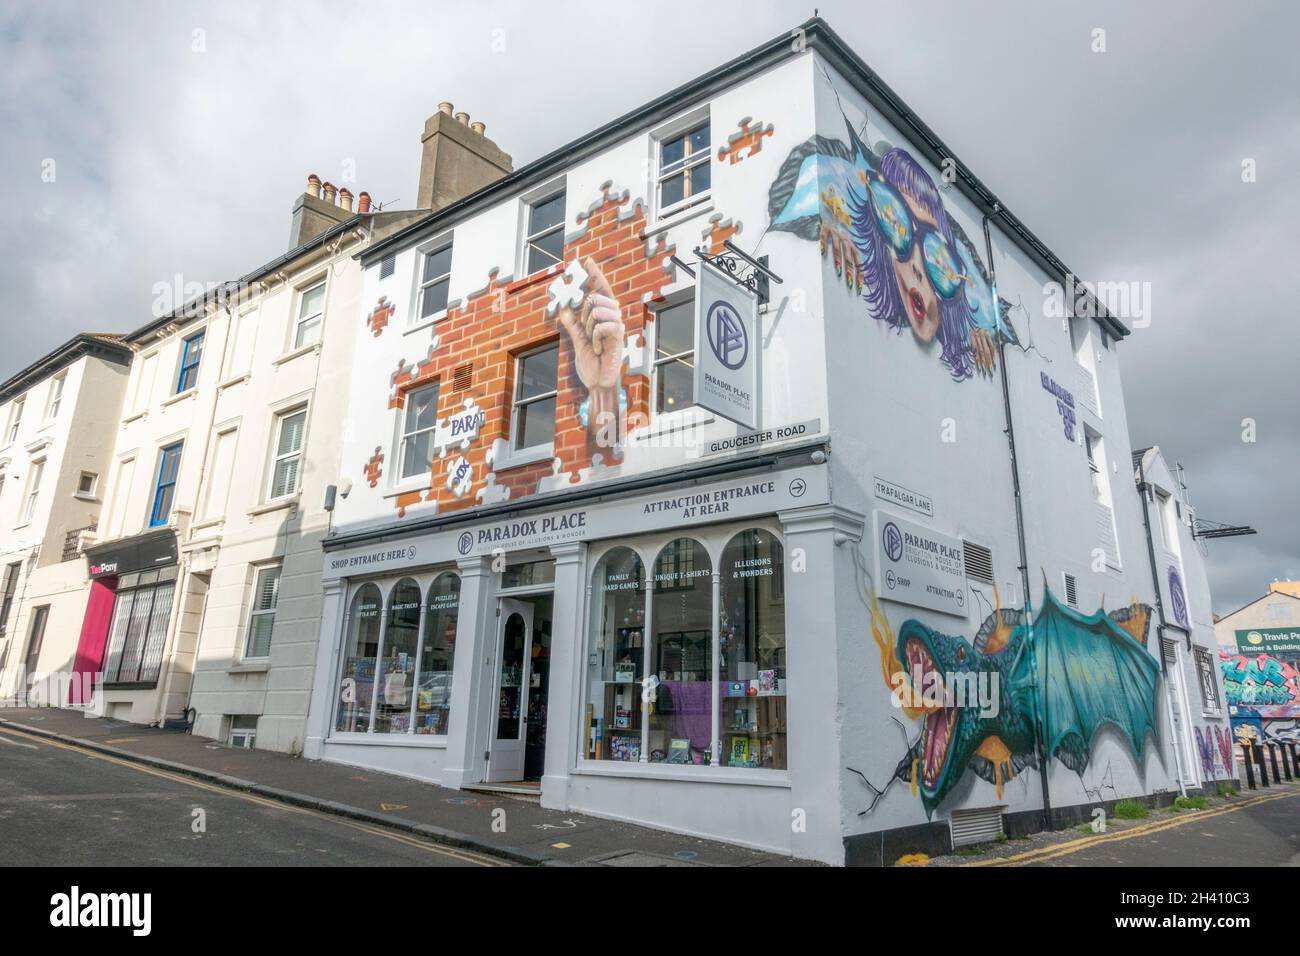 Belle opere d'arte di strada sul Paradox Place in Gloucester Road nella zona nord di Laine di Brighton, East Sussex, Regno Unito. Foto Stock